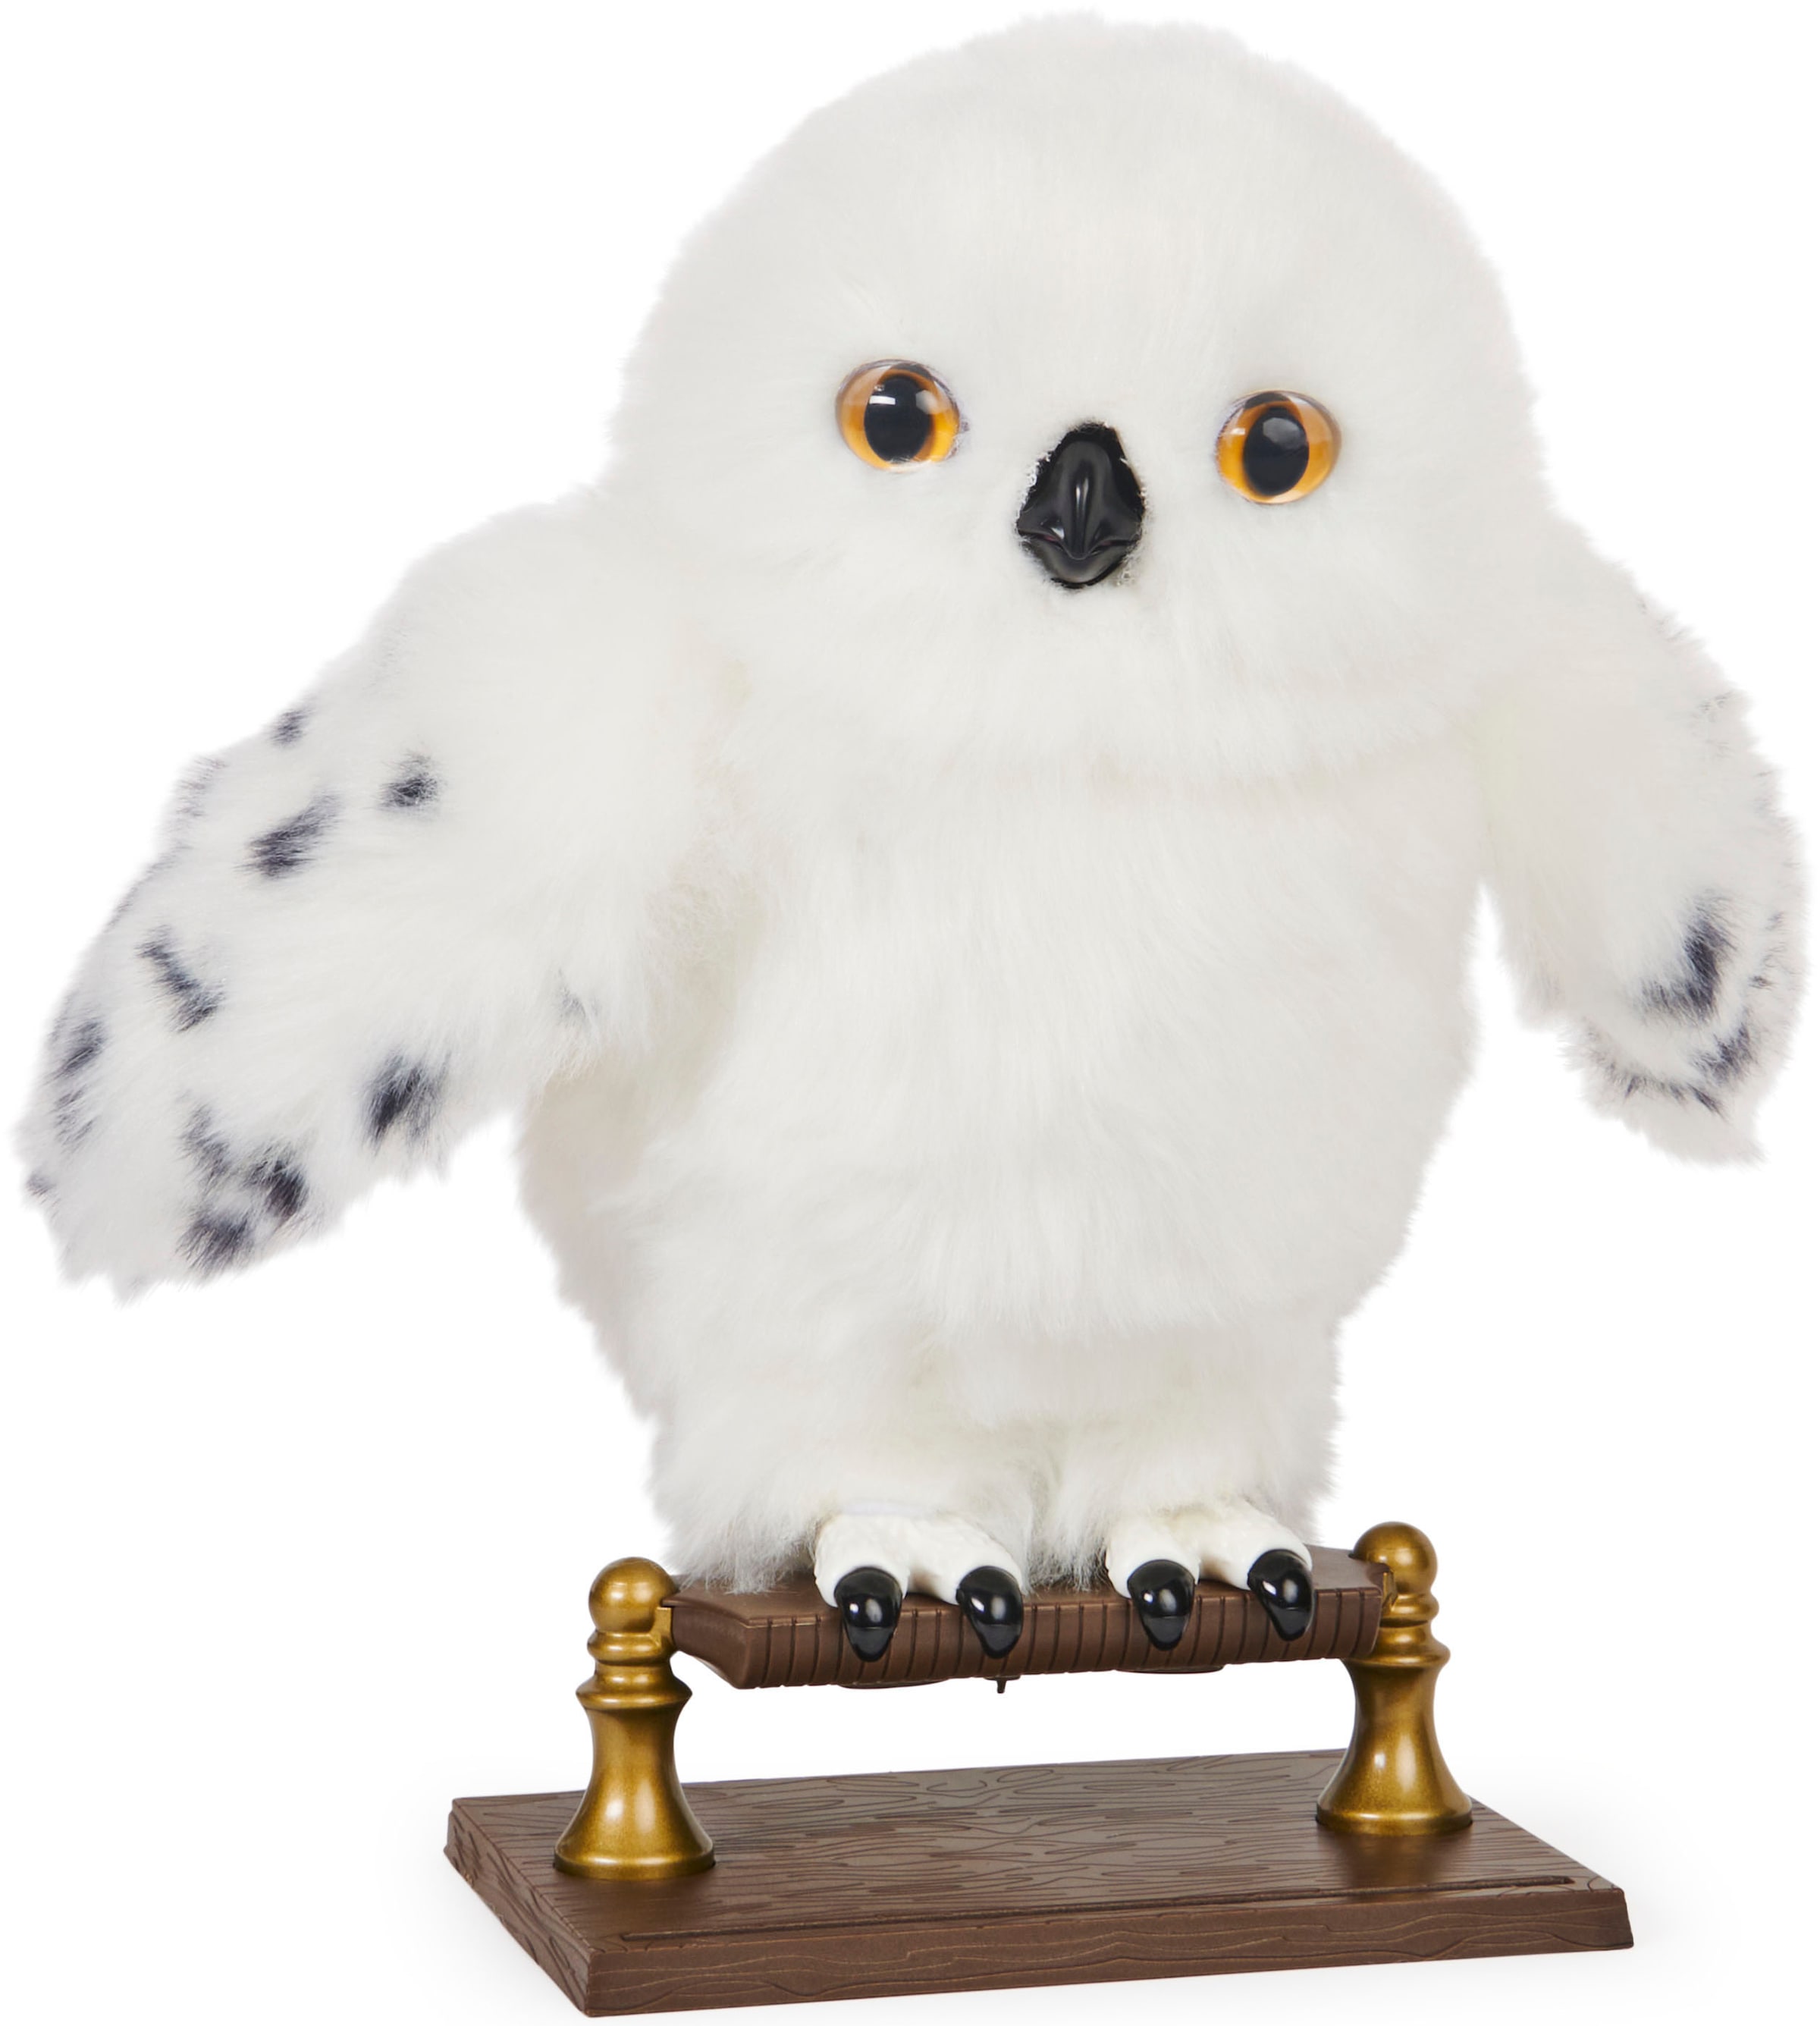 Plüschfigur »Wizarding World - Hedwig - Interaktive Eule«, mit Geräuschen und Bewegungen